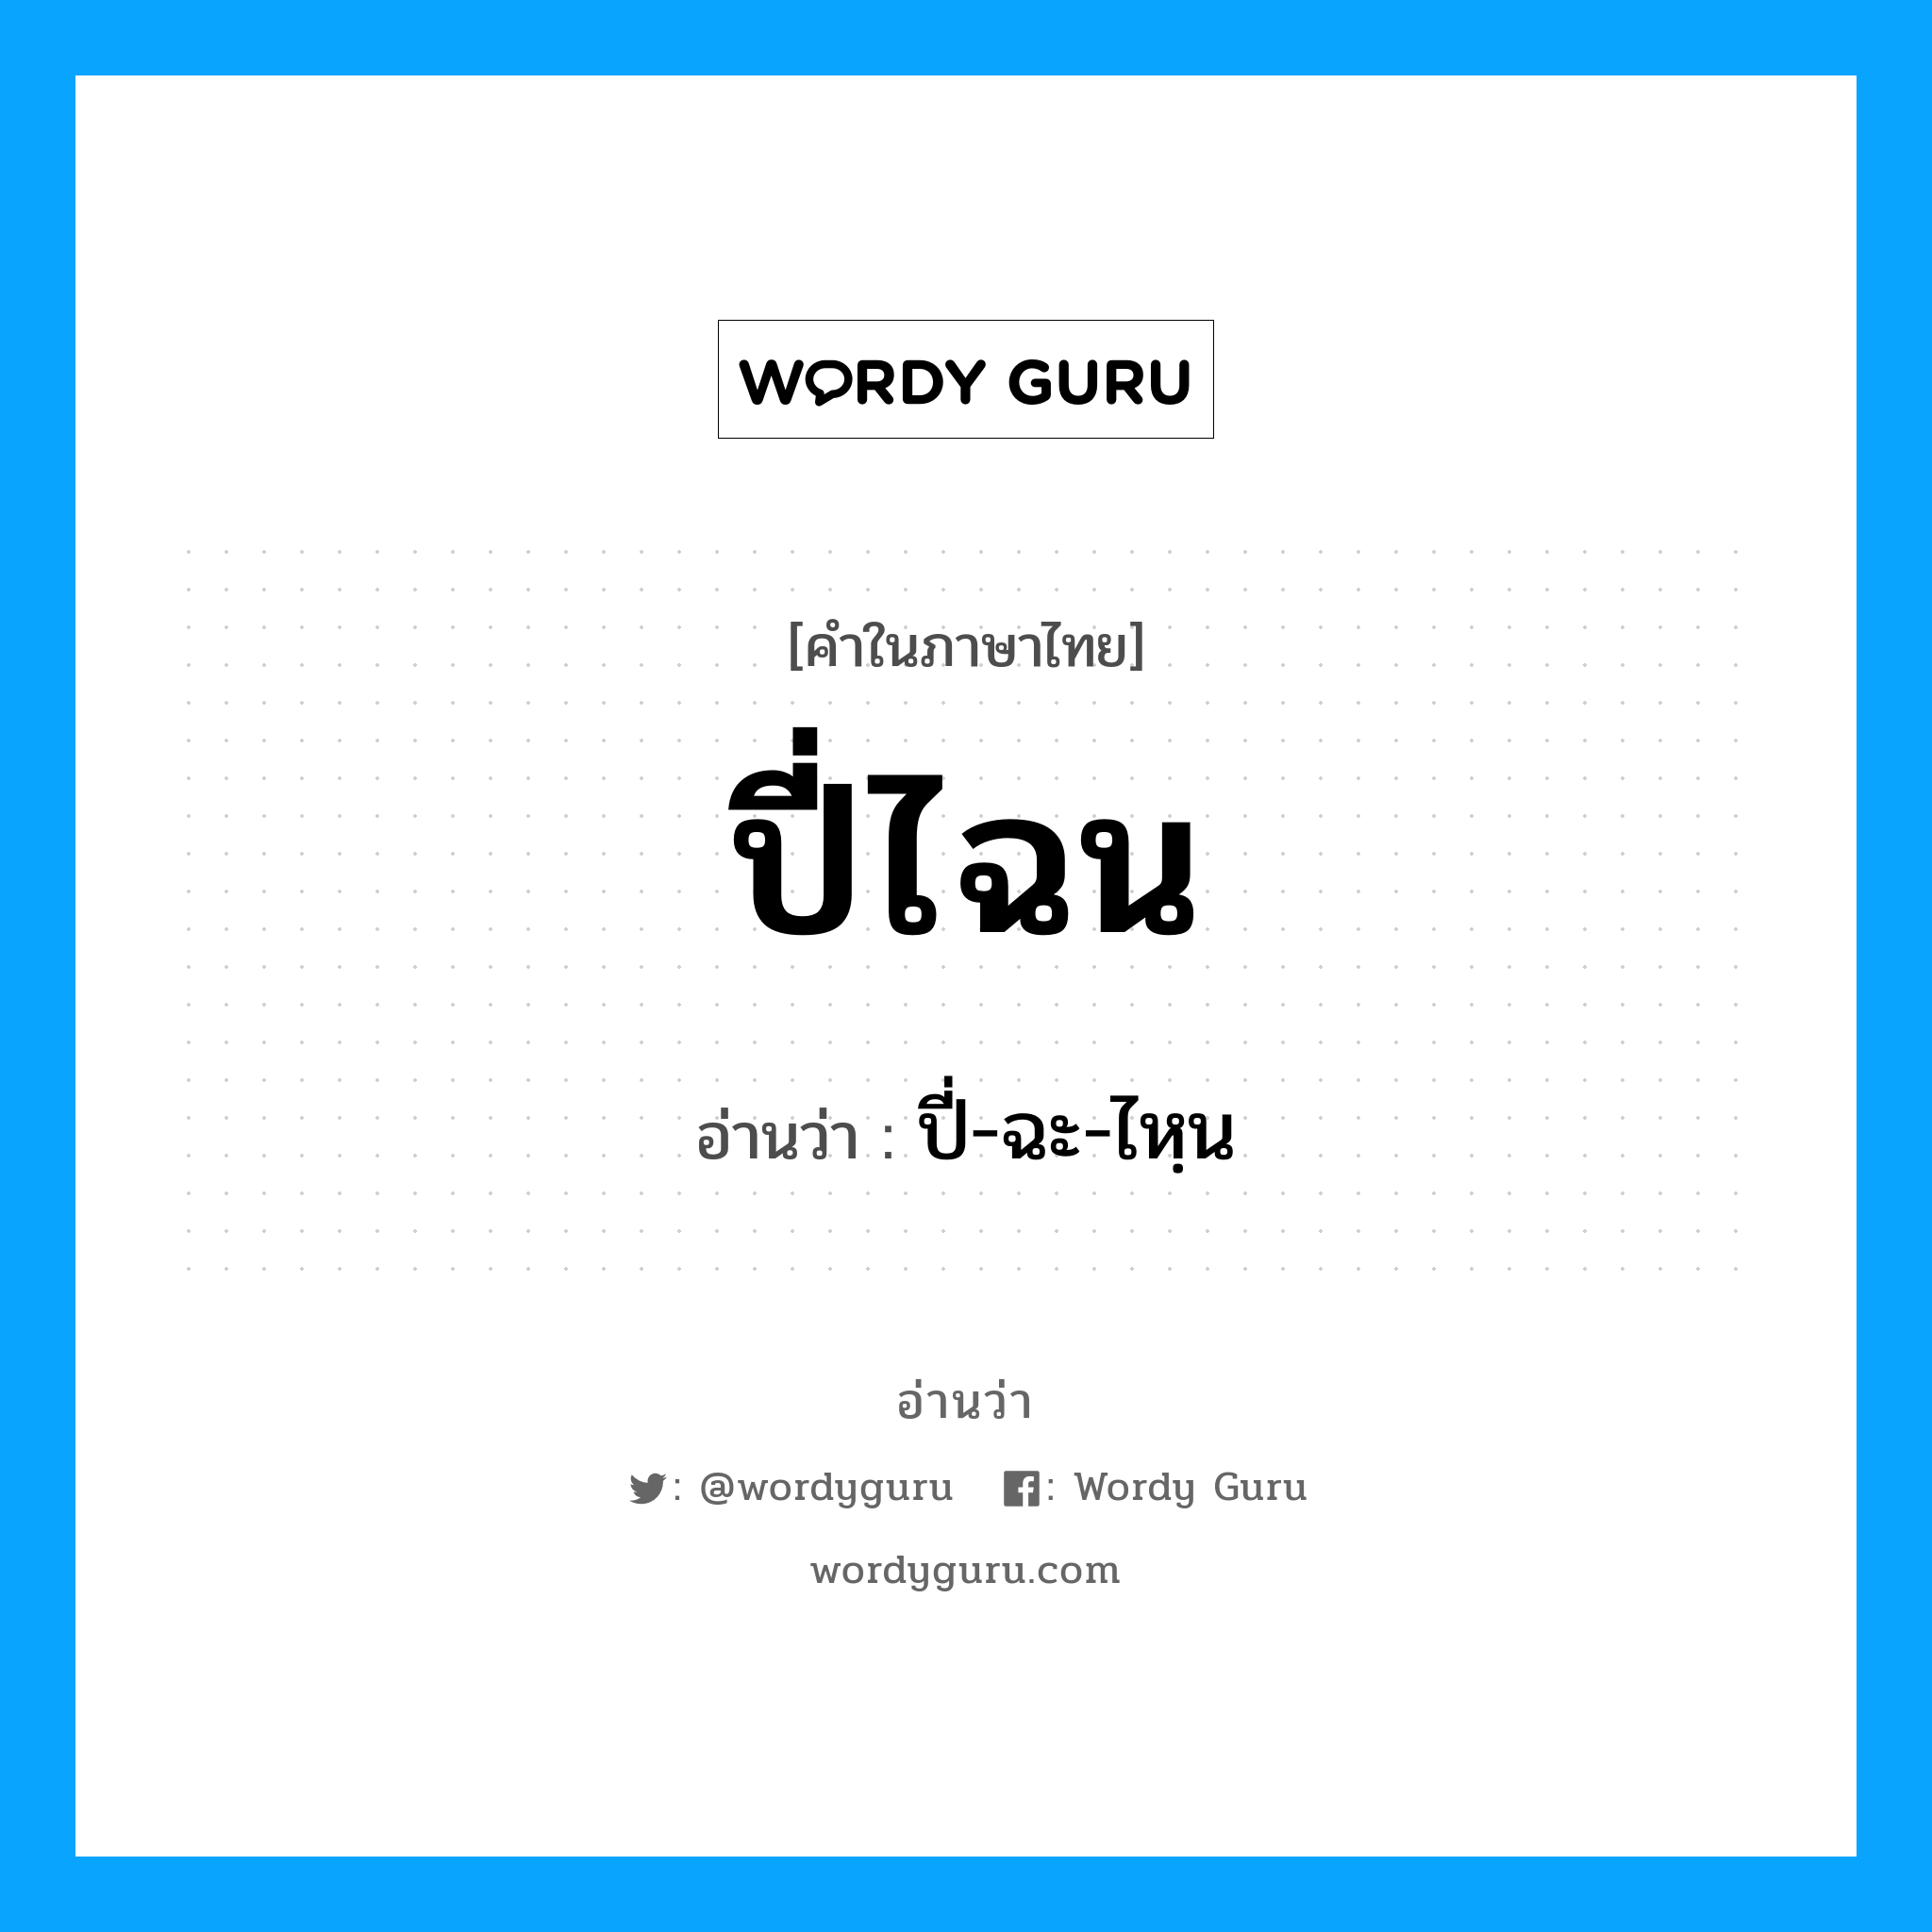 ปี่ไฉน อ่านว่า?, คำในภาษาไทย ปี่ไฉน อ่านว่า ปี่-ฉะ-ไหฺน